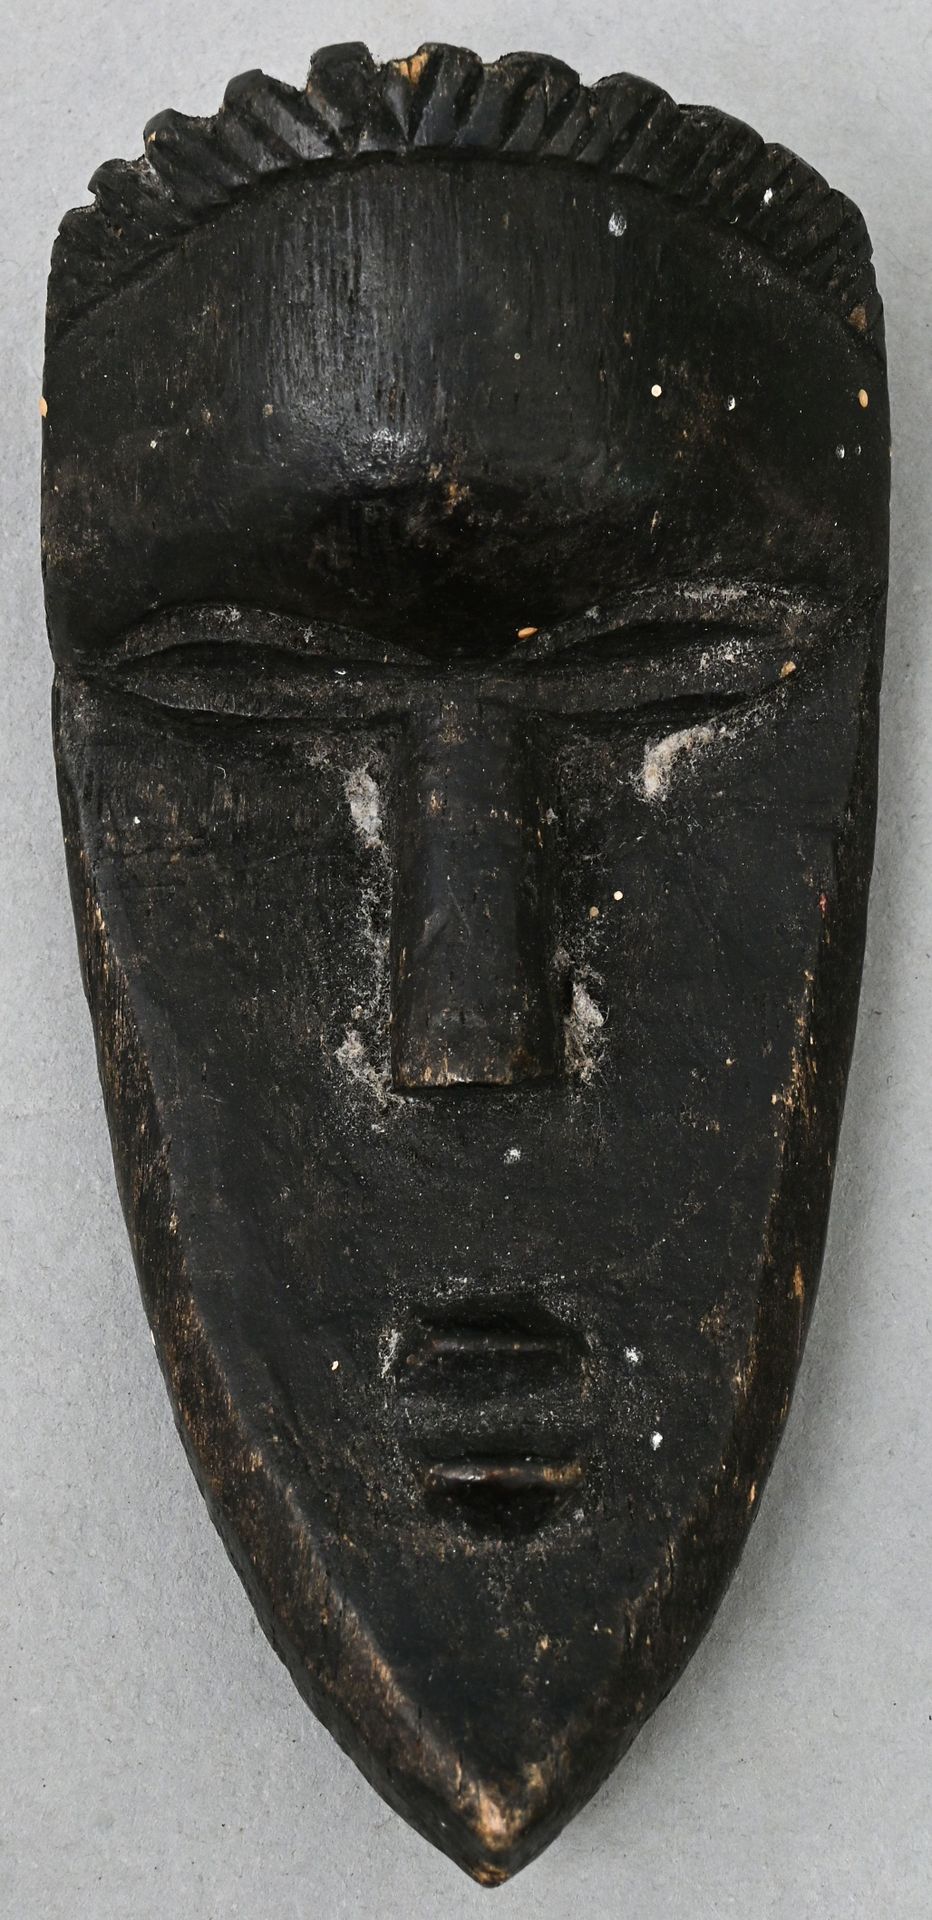 Null 巴萨风格的微型面具（利比里亚） 木质，雕刻，发黑。一张拟人化的脸。高9.5厘米 出处：符腾堡州私人财产 巴萨风格的微型面具，木质，雕刻，发黑。一张拟人&hellip;